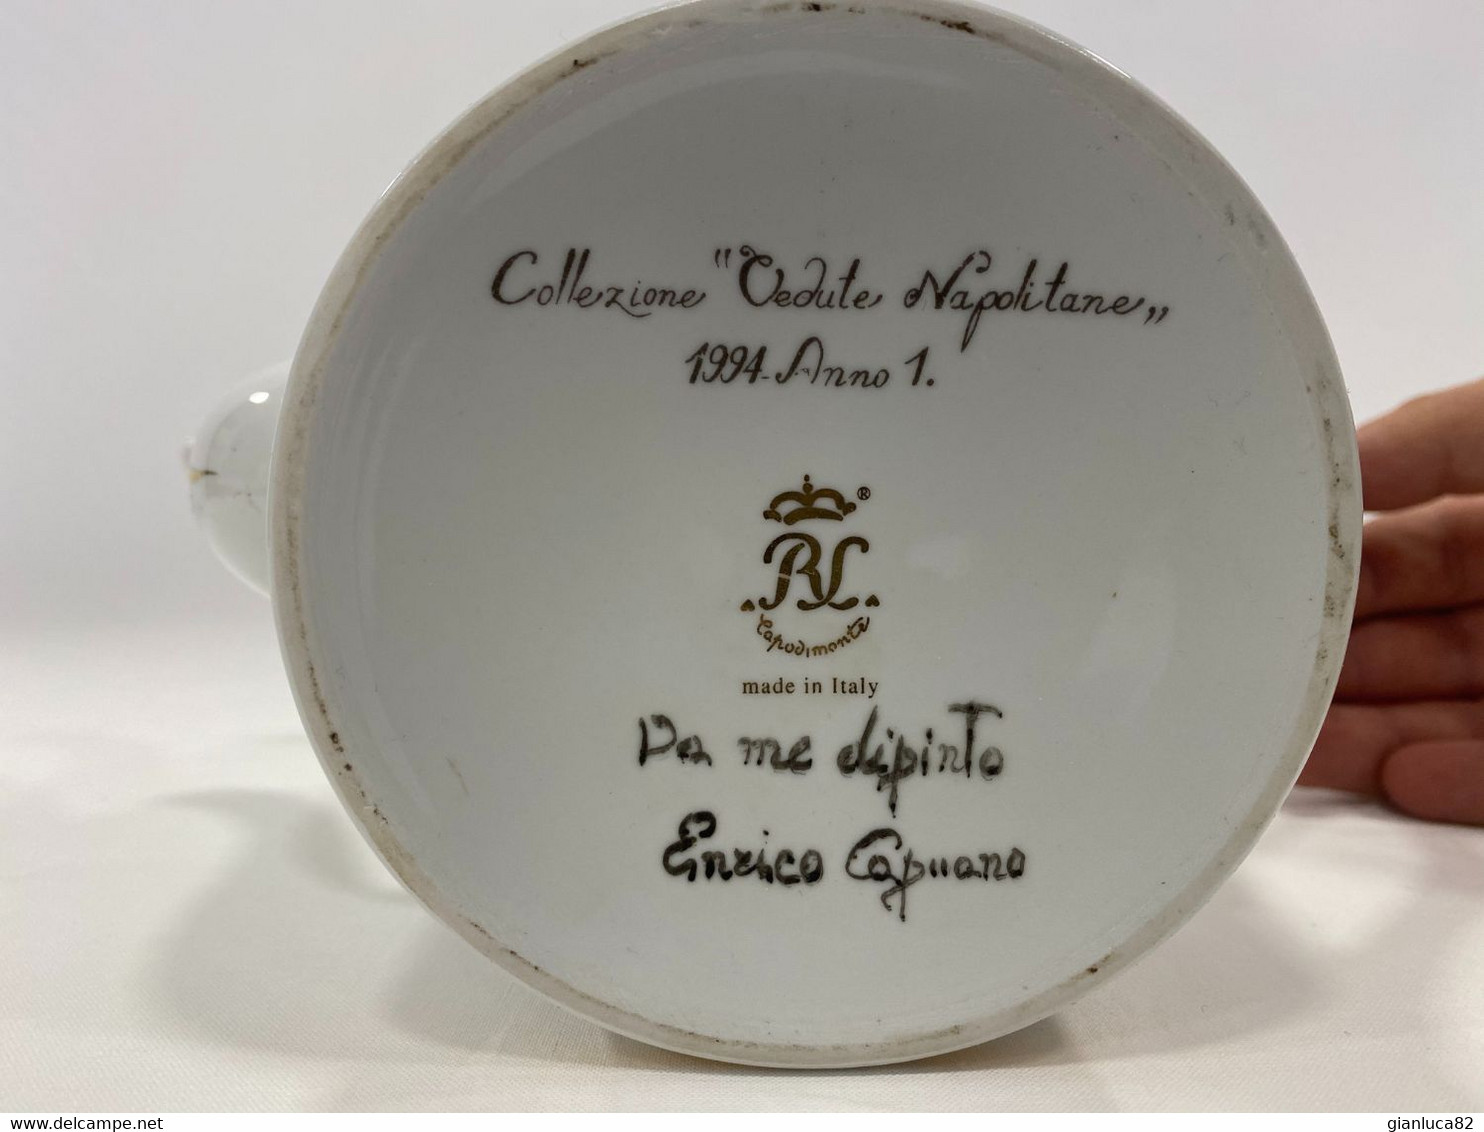 Servizio da the di porcellana bianca Capodimonte Dip. Enrico Capuano (G03)